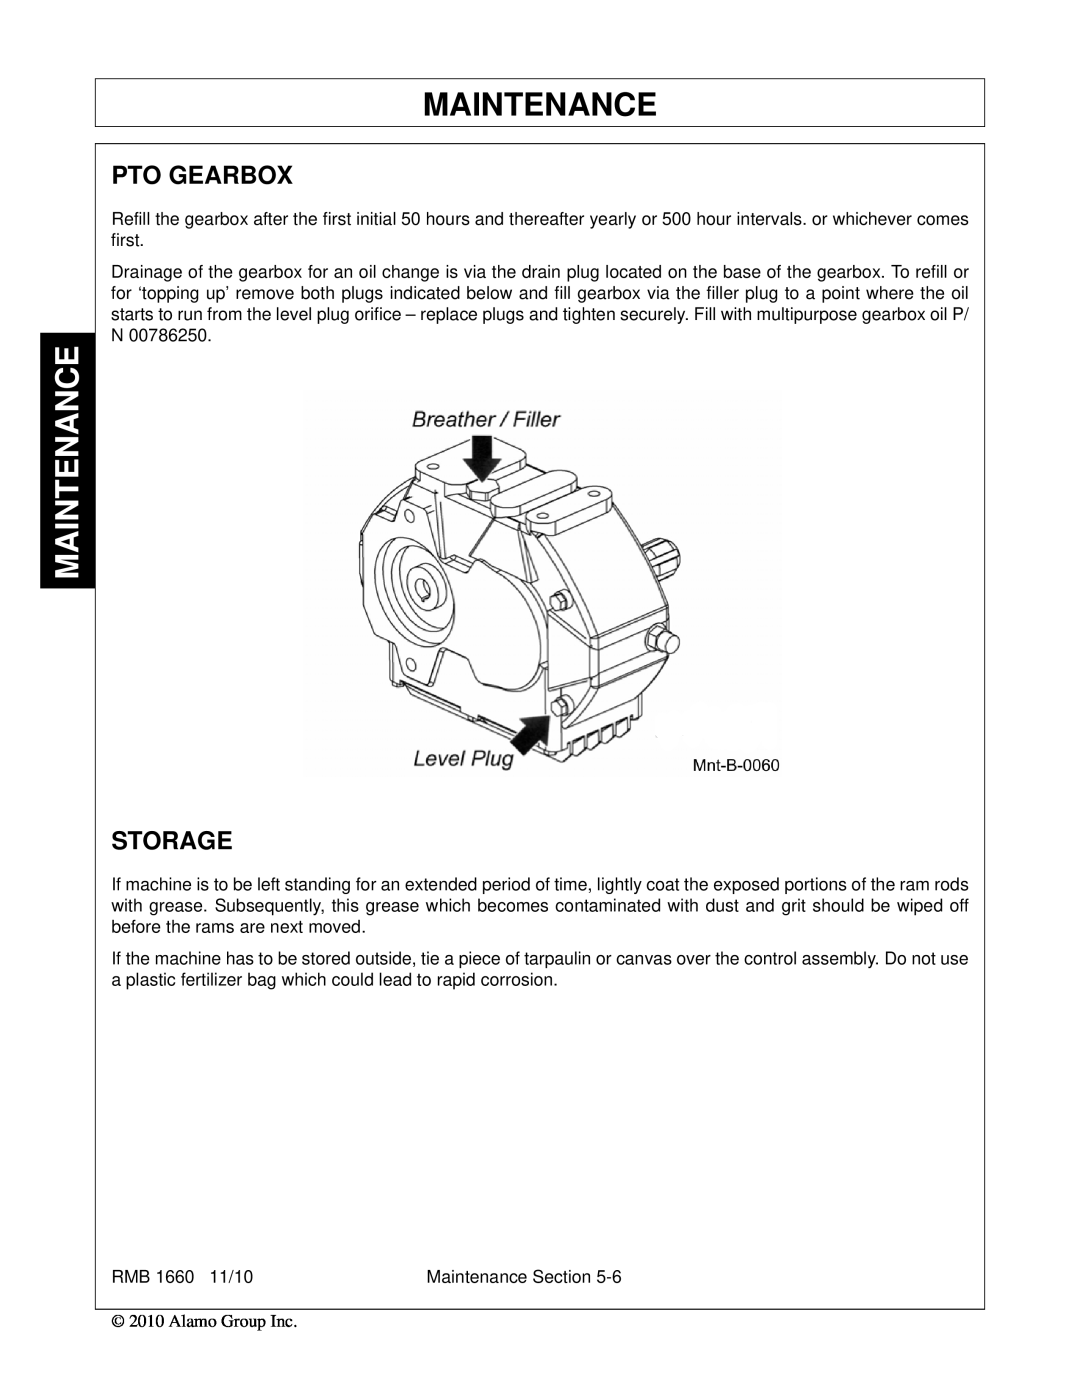 Bush Hog RMB 1660 manual Maintenance, Pto Gearbox, Storage 